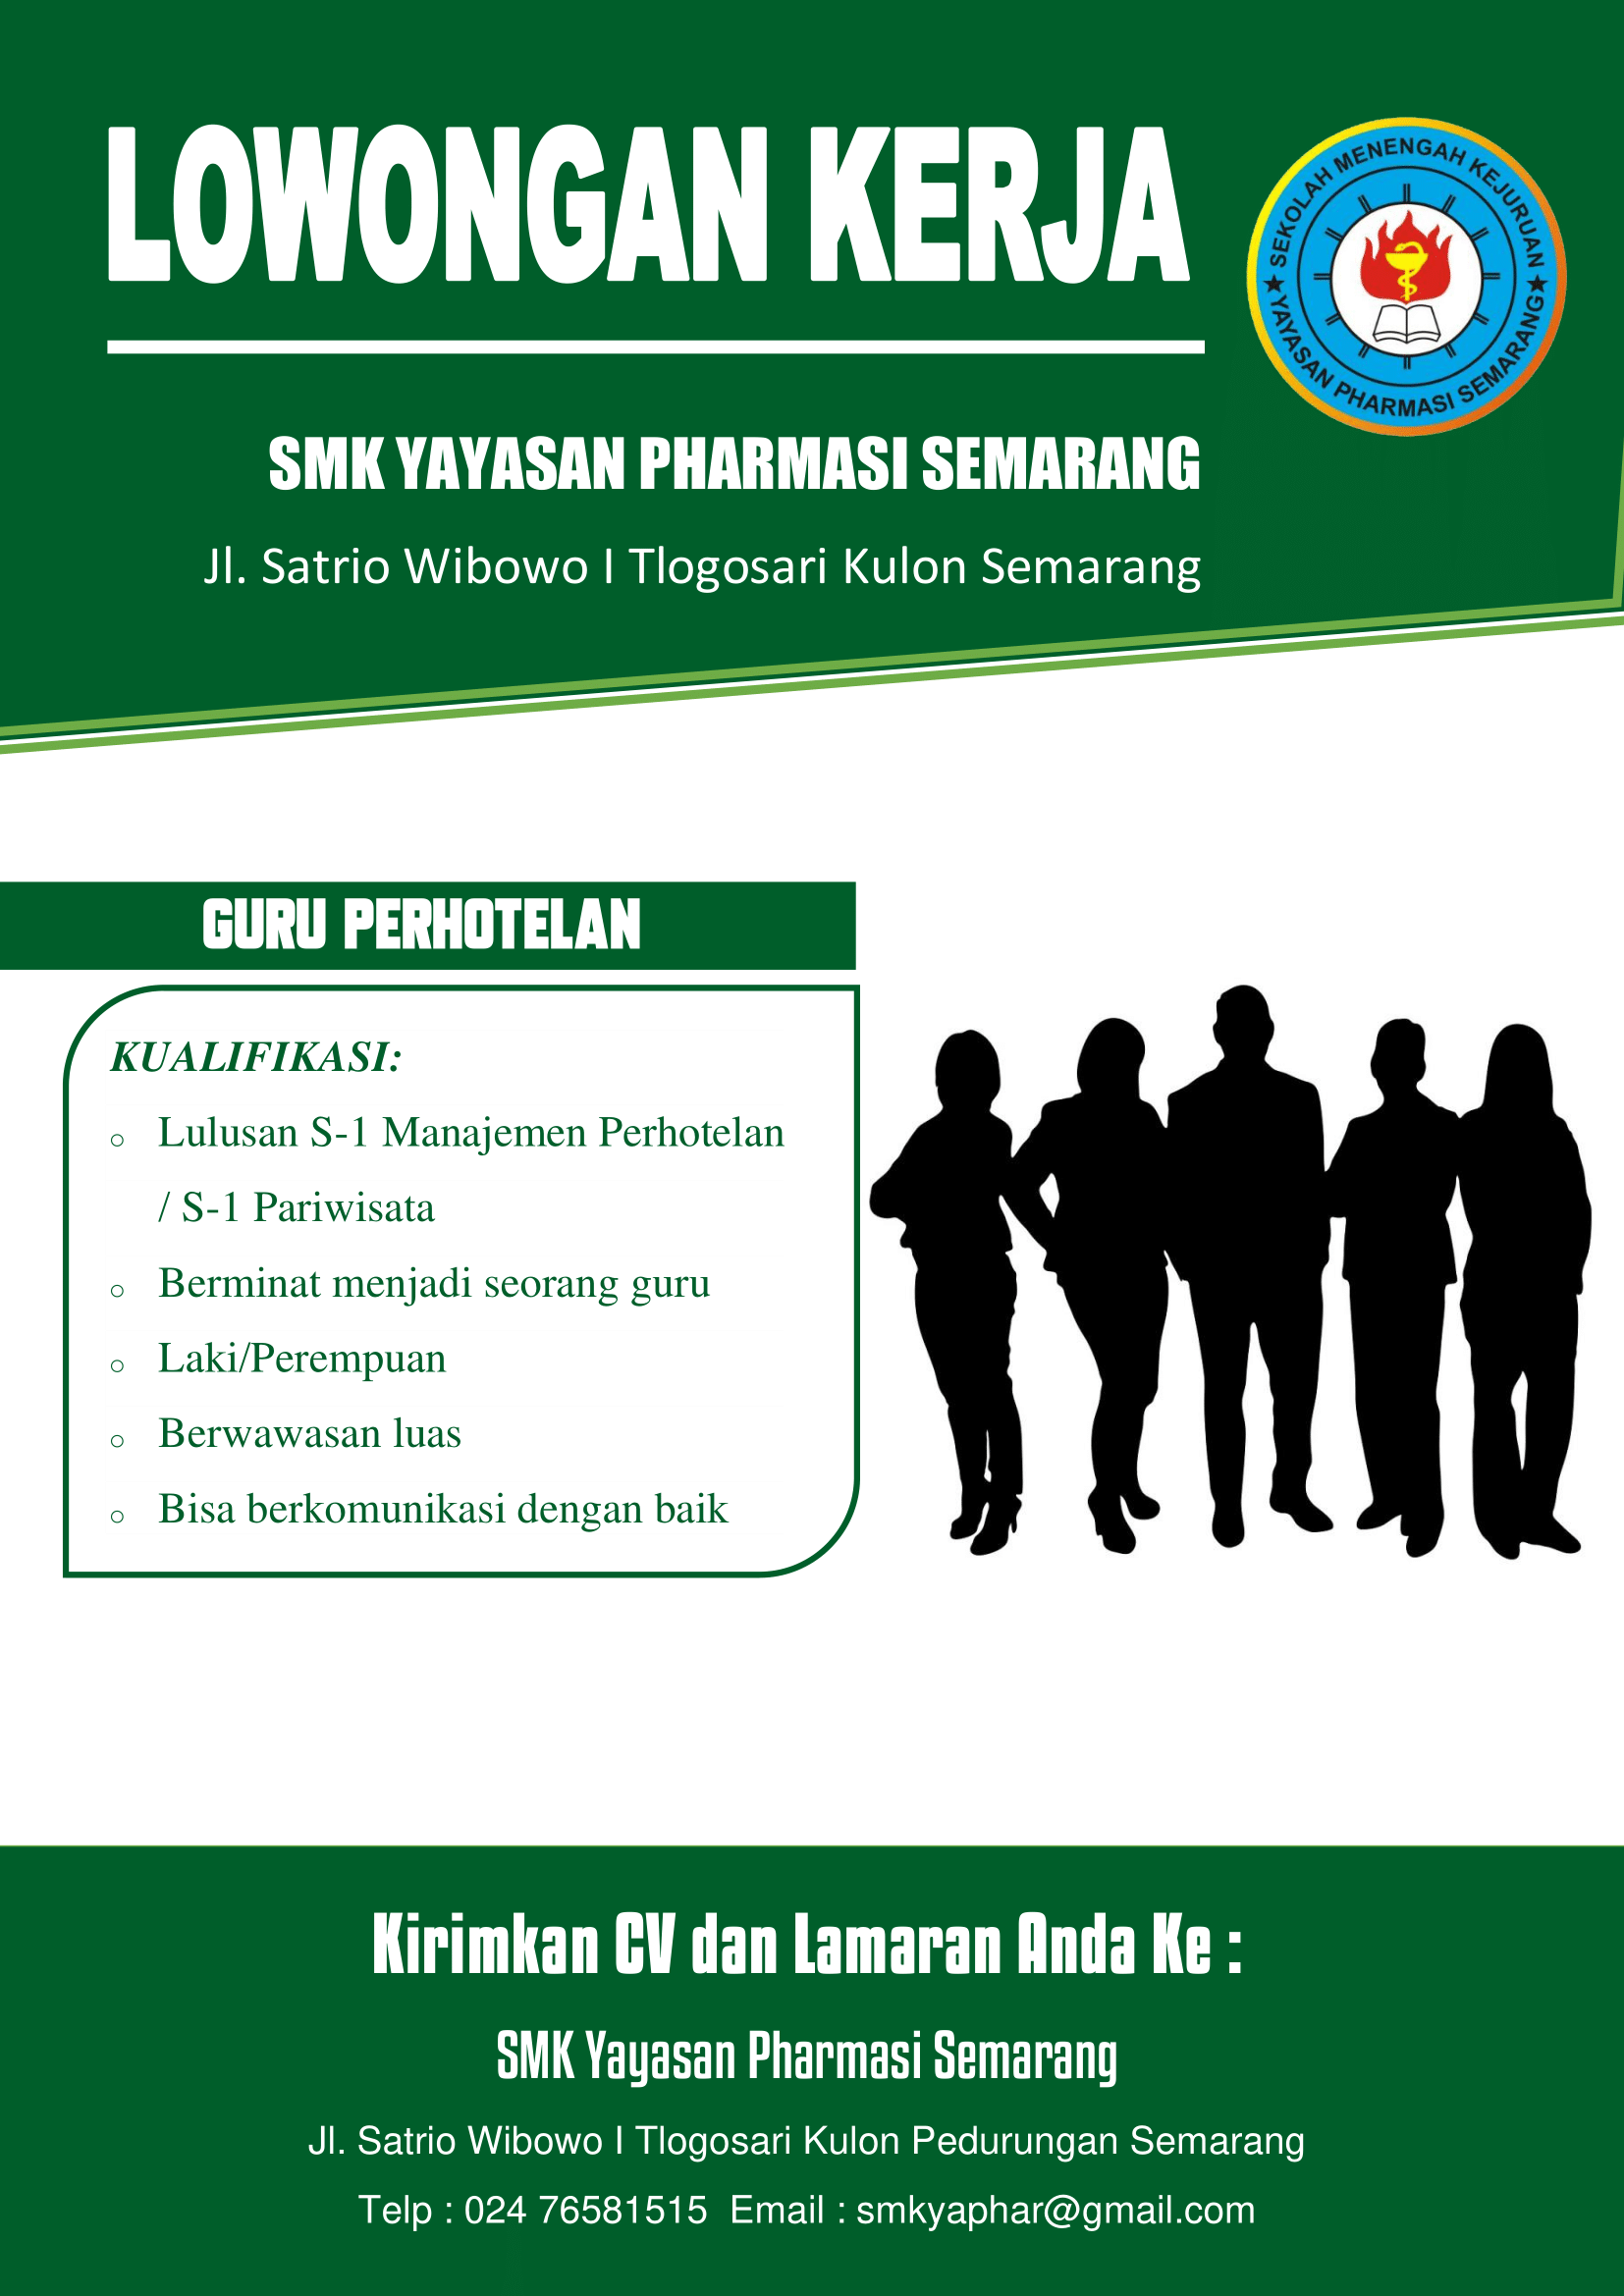 Lowongan Kerja Farmasi Semarang Publik Service 2